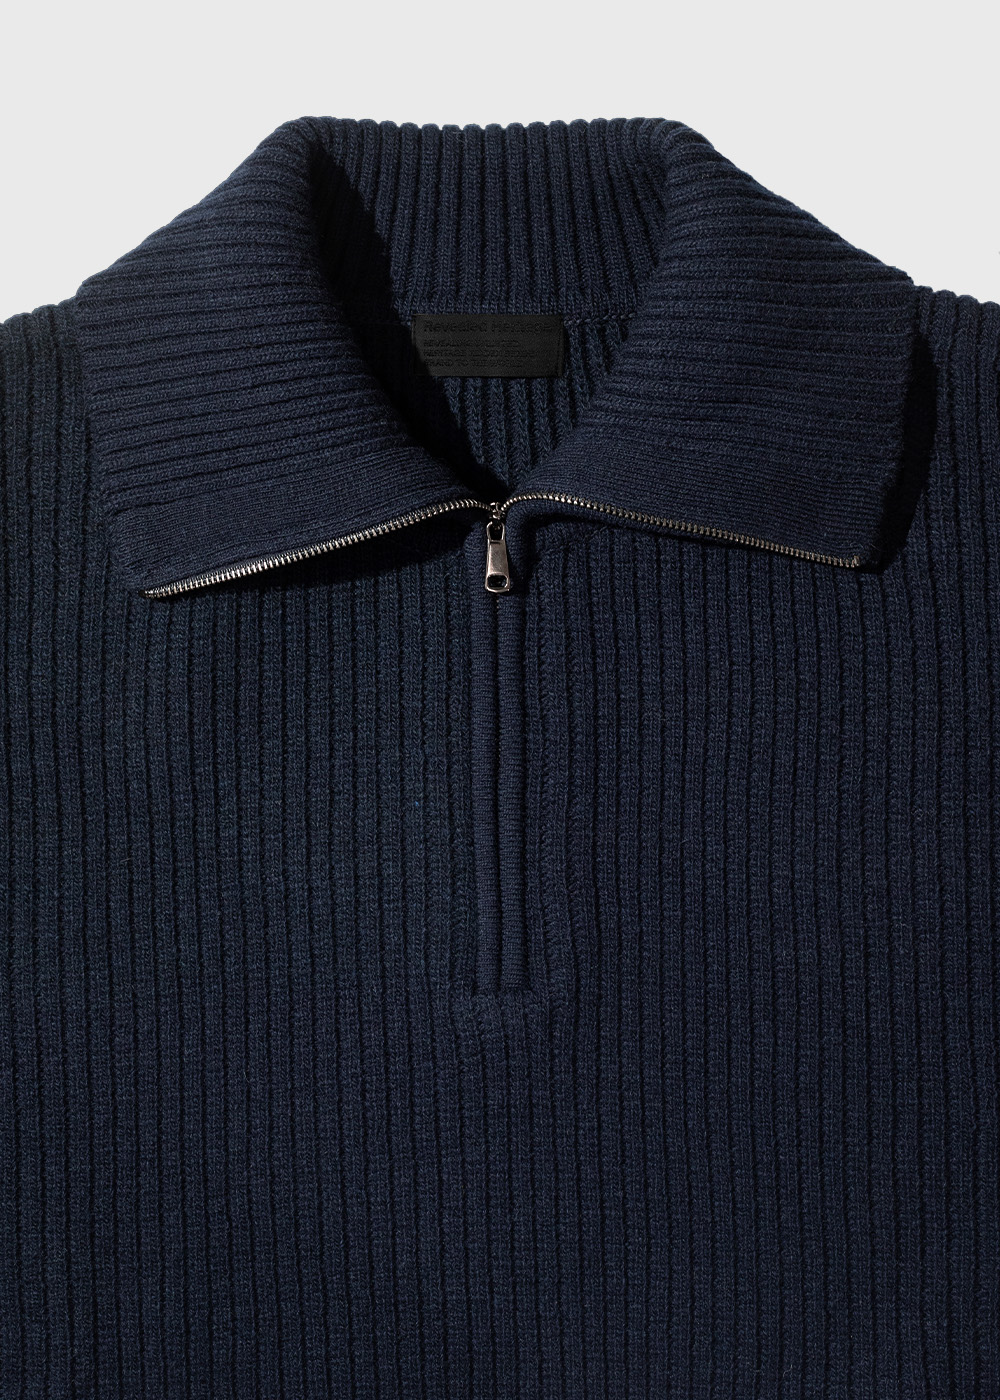 Half Zip Pullover Cardigan Knit _ navy